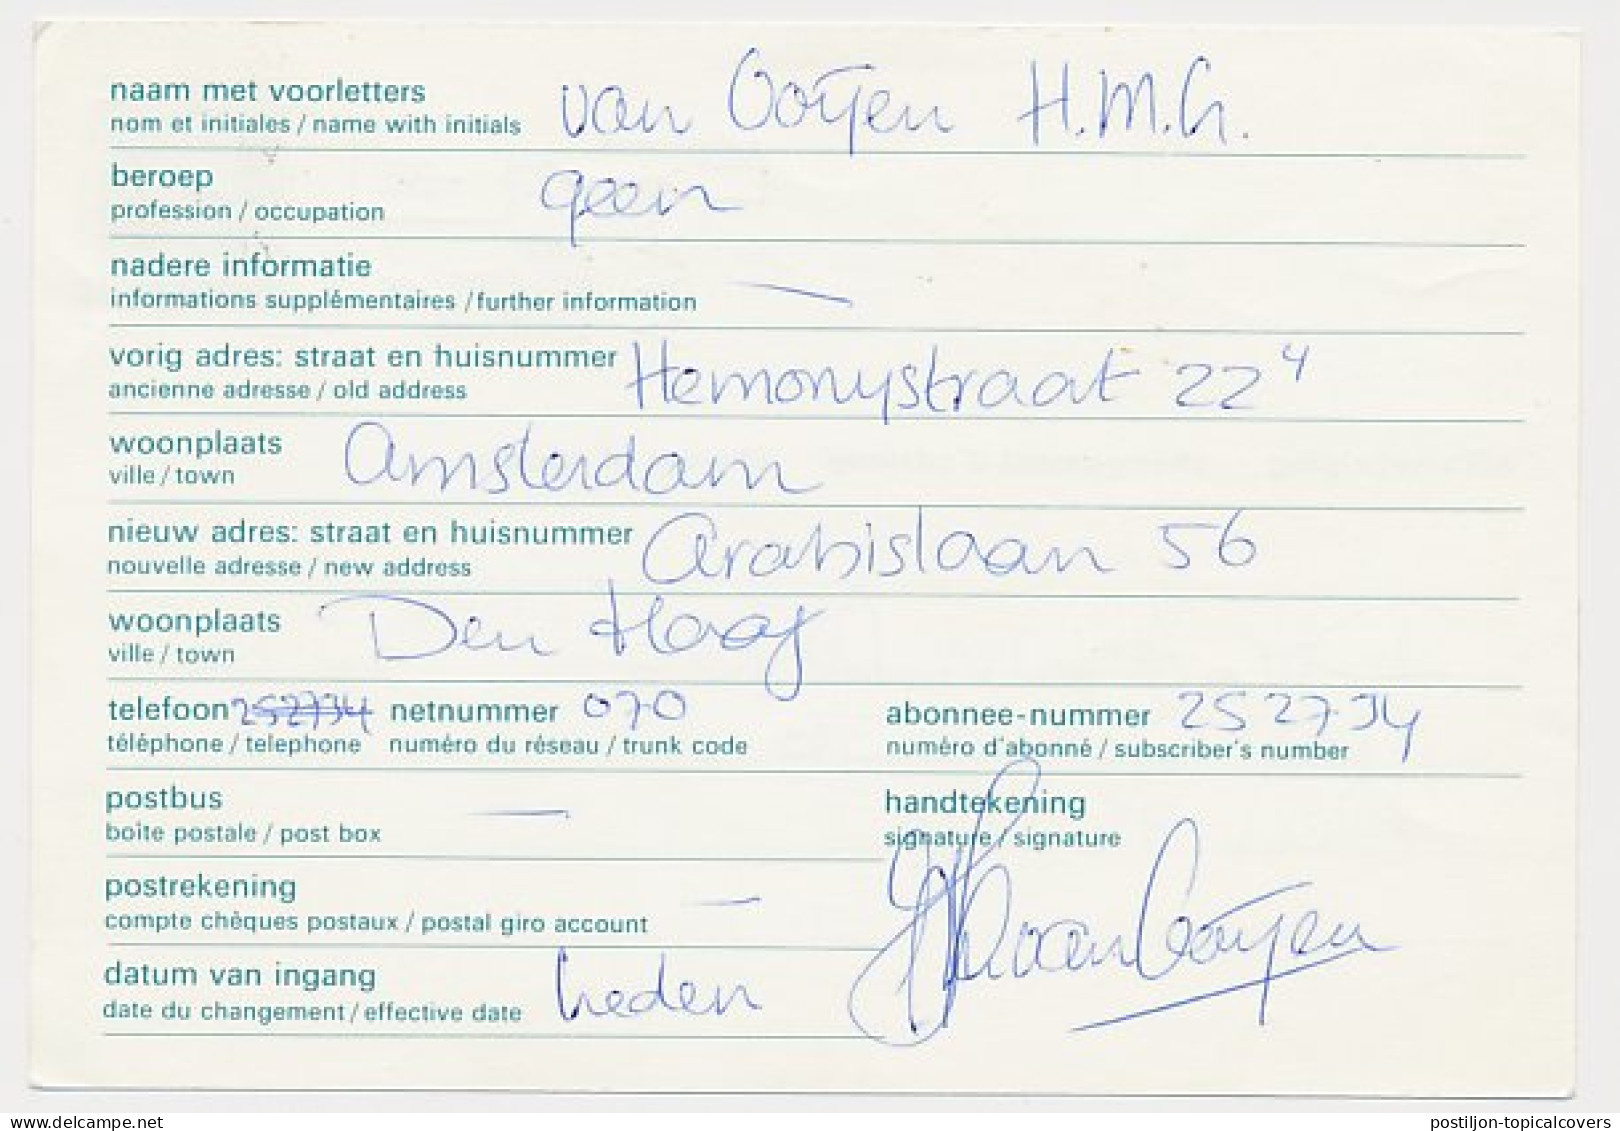 Verhuiskaart G.40 B Locaal Te Den Haag 1976 - Entiers Postaux